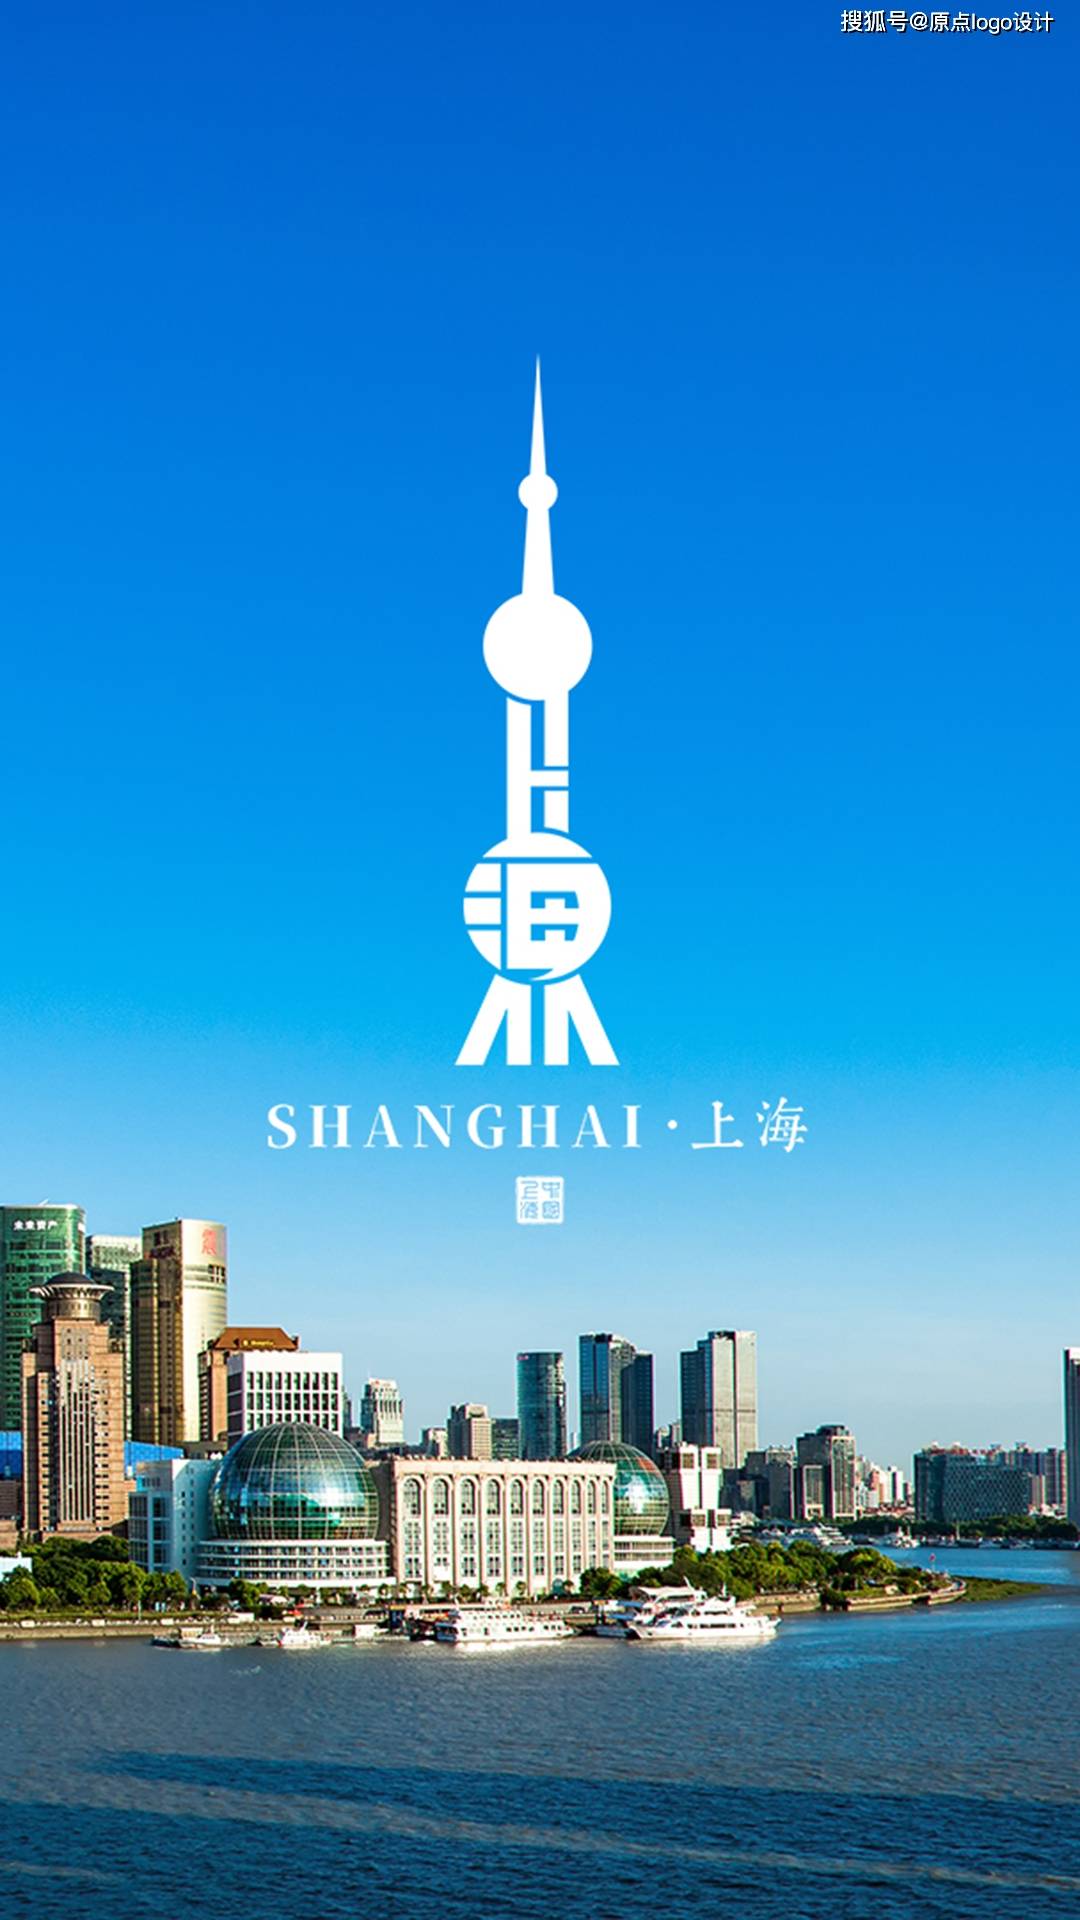 上海城市logo设计,还想看哪个城市呢?